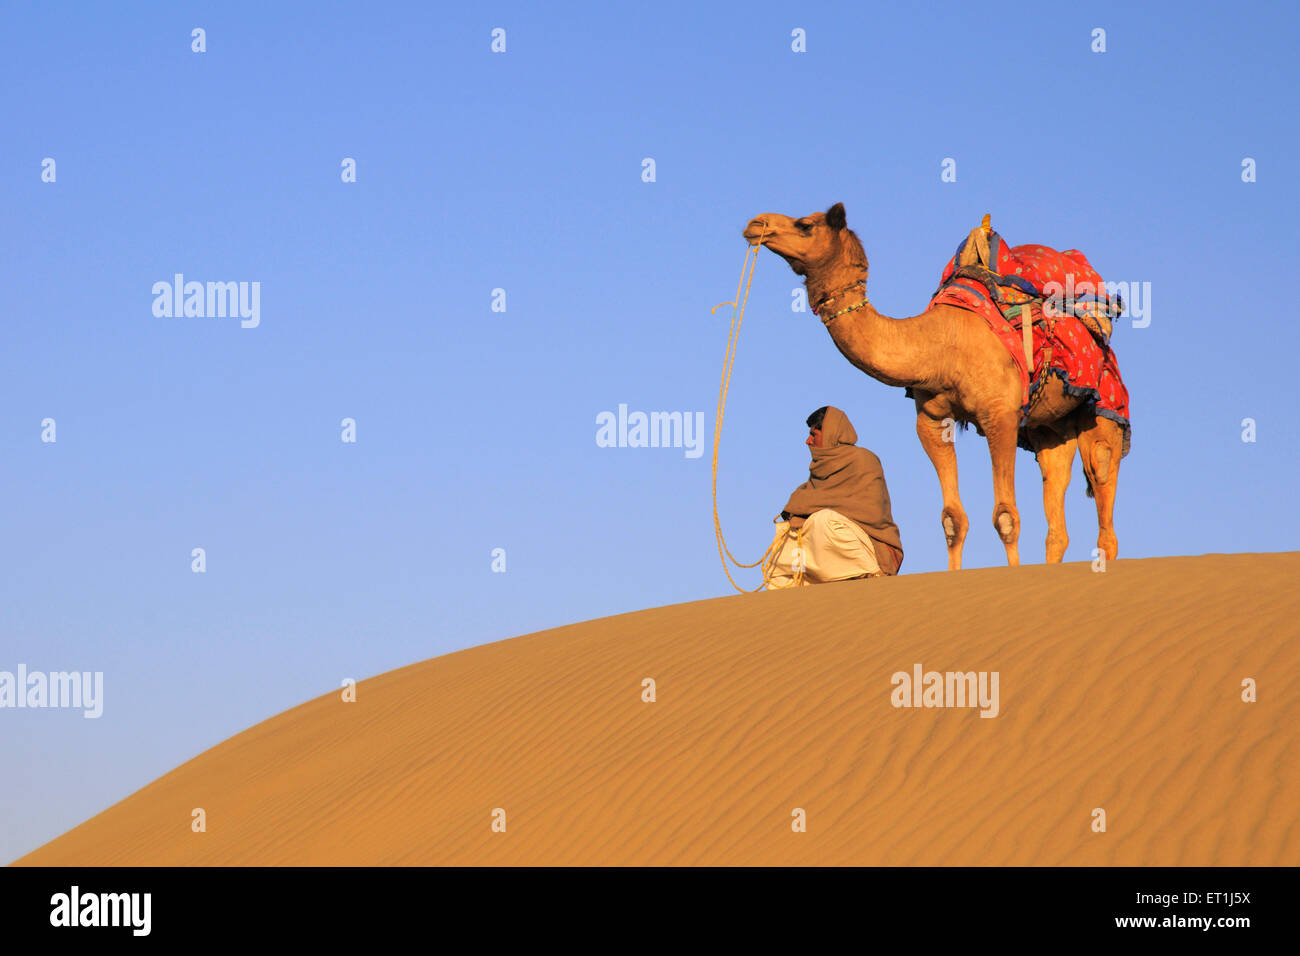 Propriétaire de chameaux avec debout assis sur les dunes de sable de Sam à Jaisalmer ; ; ; Inde Rajasthan Banque D'Images